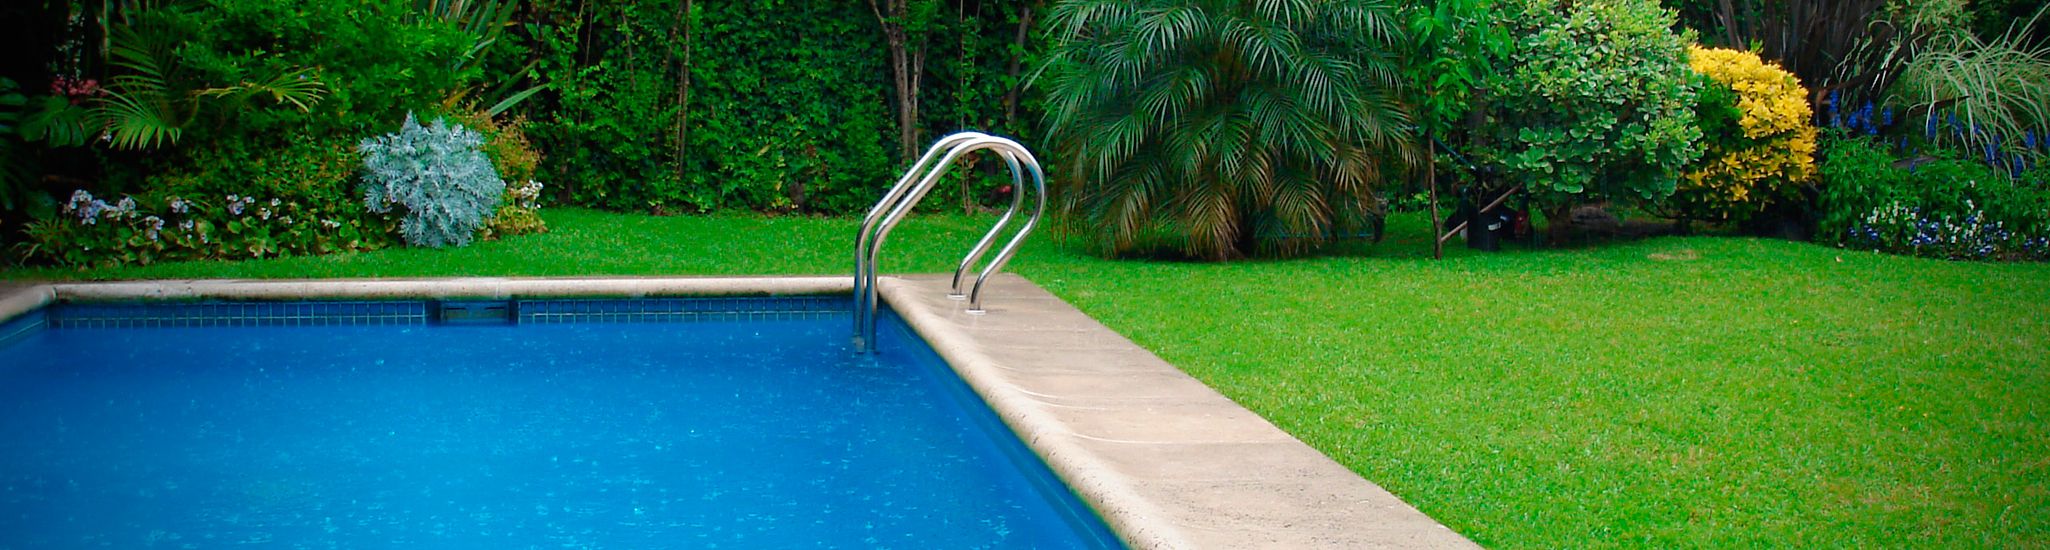 PolarGreen Mantenimiento de piscina y jardines